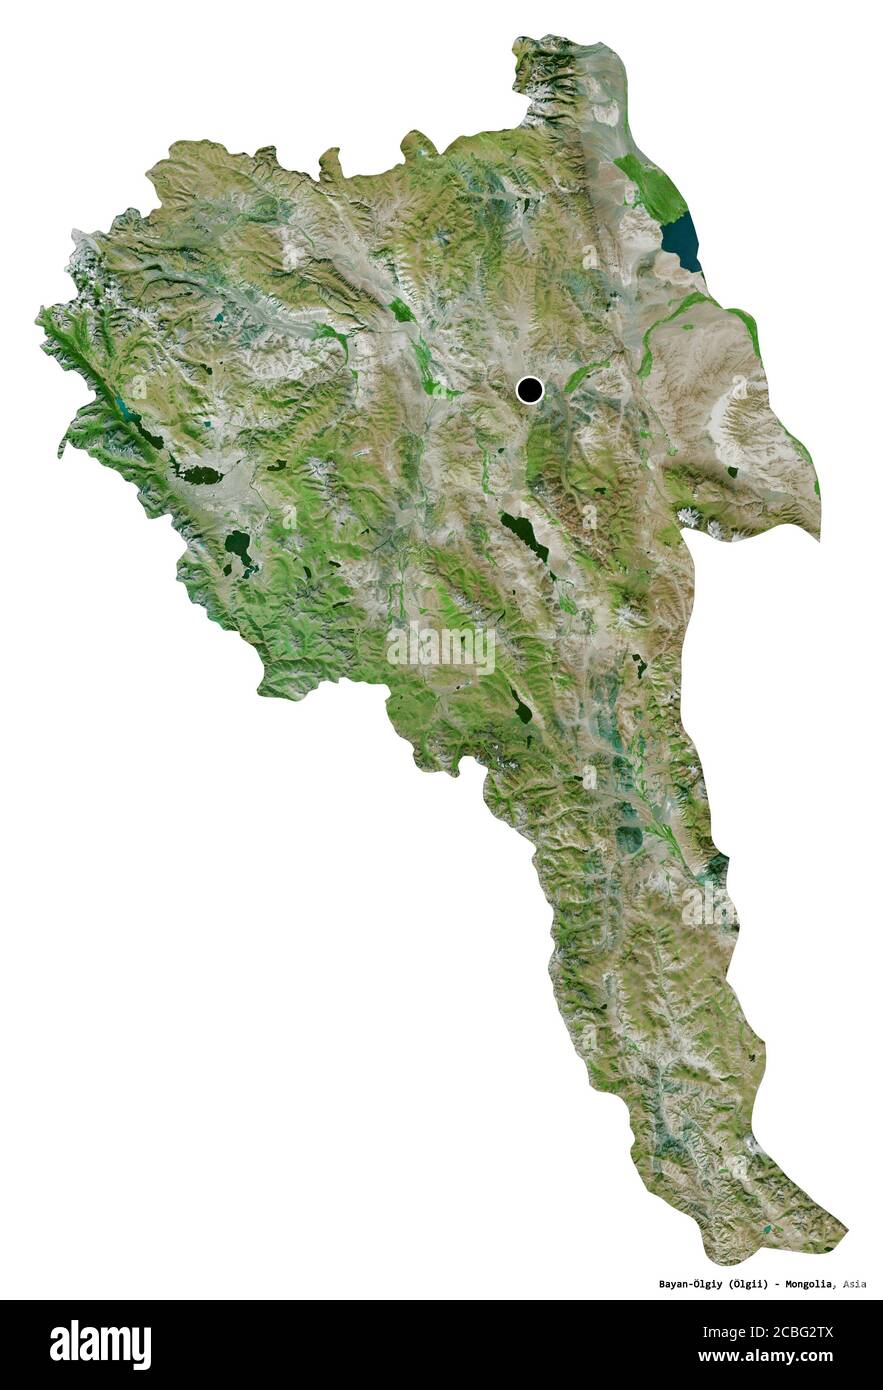 Forma di Bayan-Ölgiy, provincia della Mongolia, con la sua capitale isolata su sfondo bianco. Immagini satellitari. Rendering 3D Foto Stock